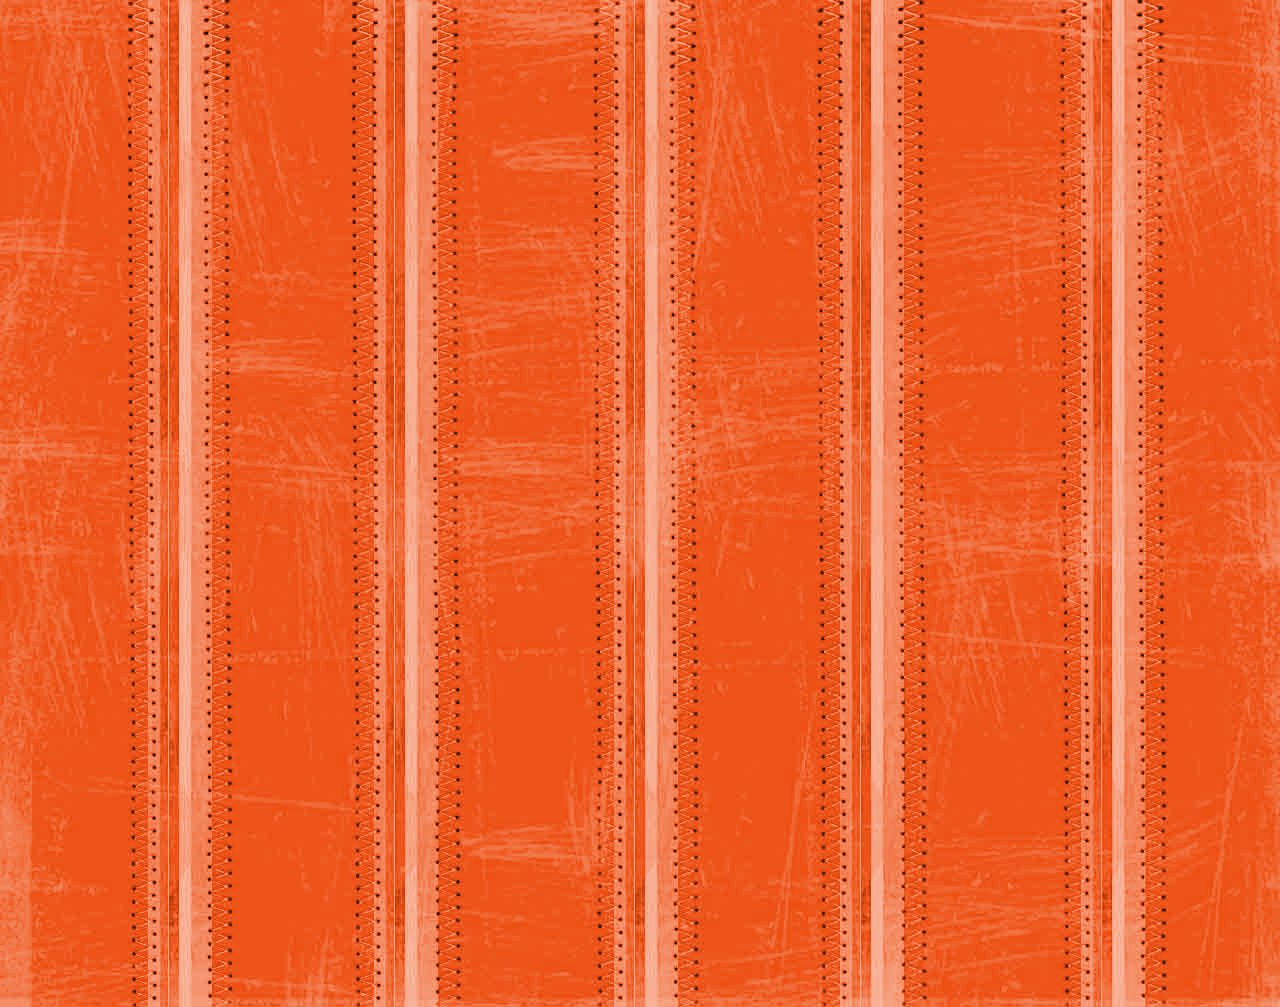 Orange stitches Backgrounds